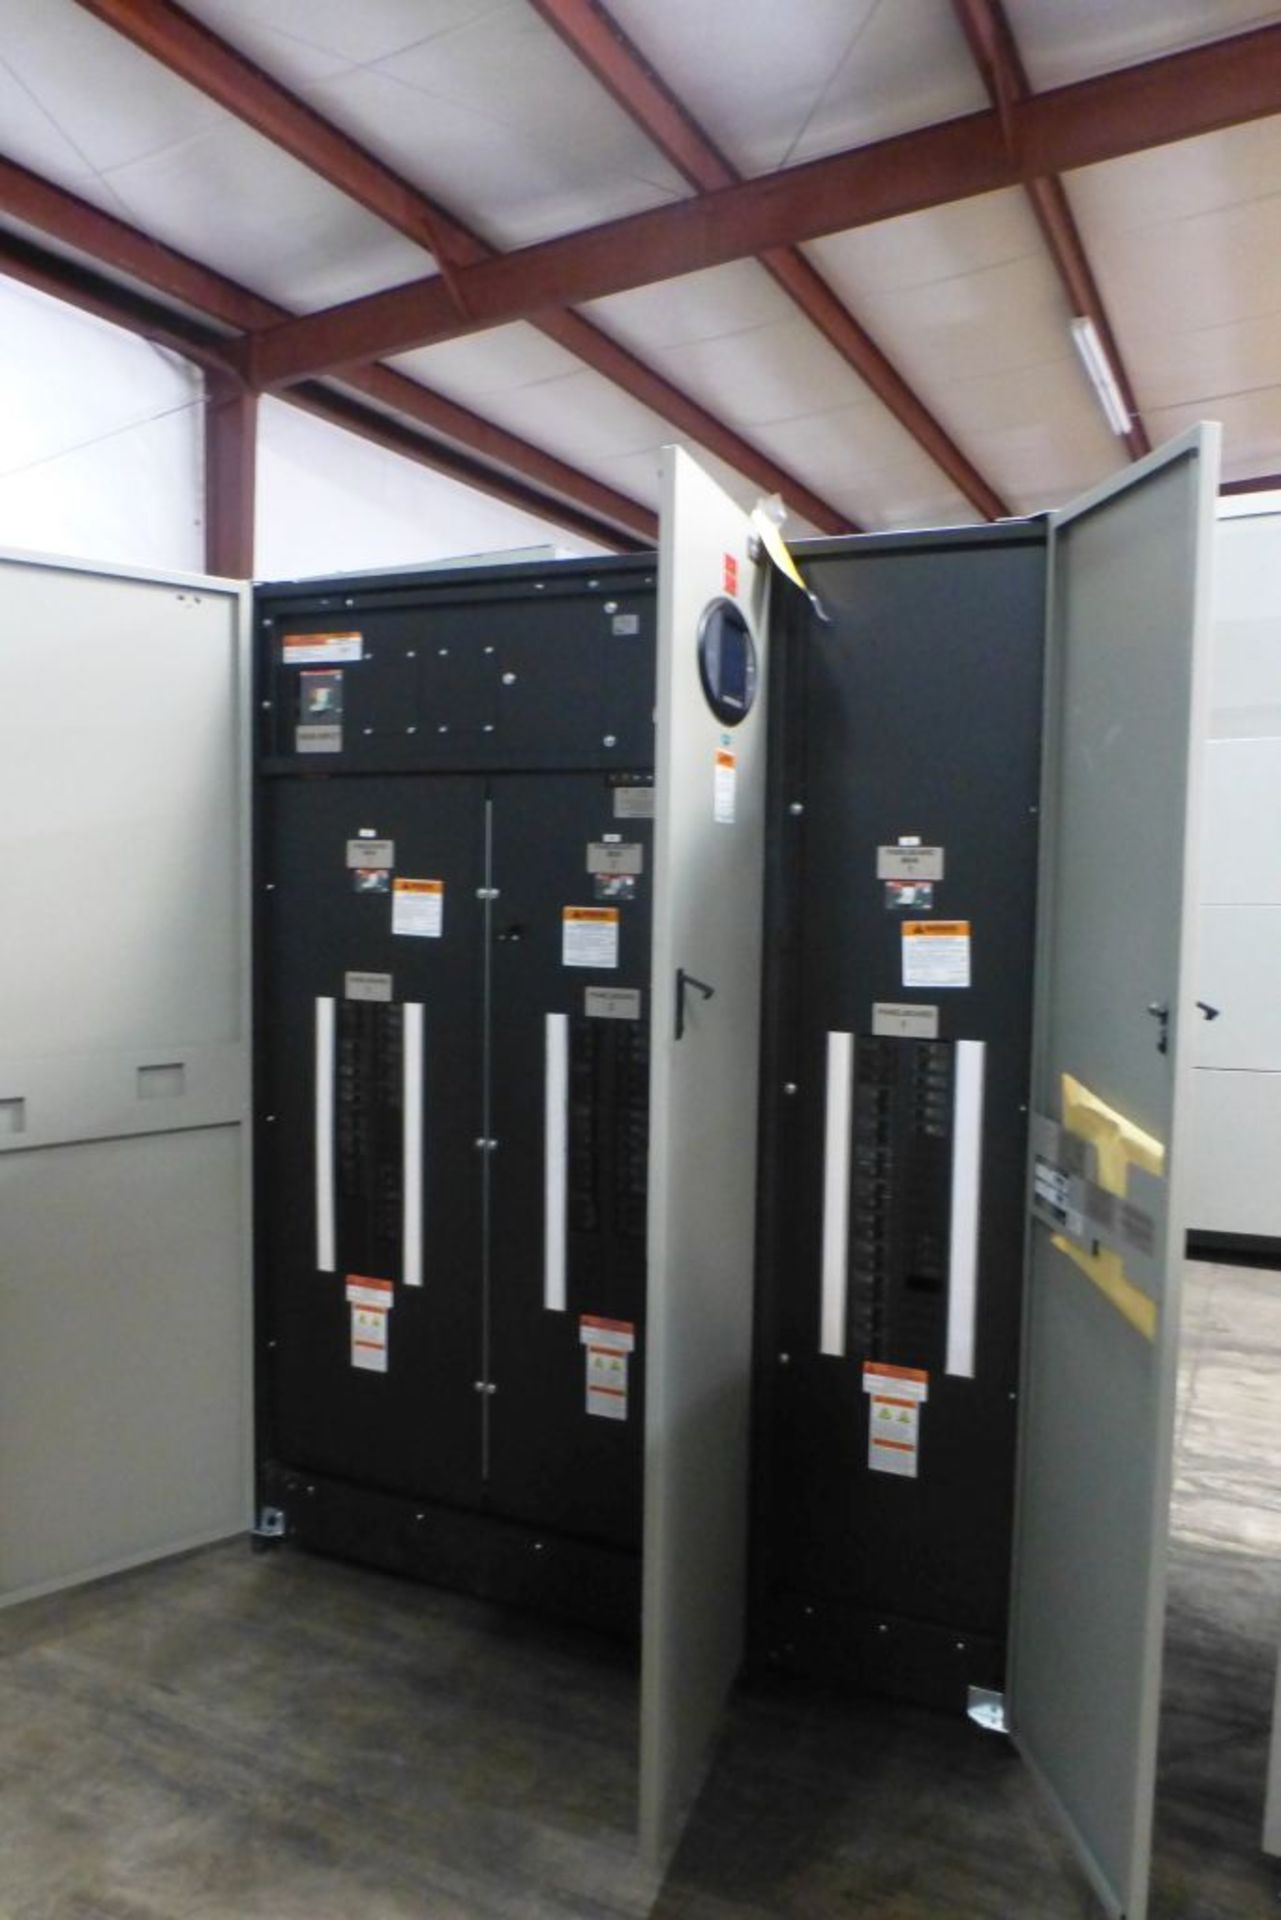 Liebert Power Distribution Center - Image 6 of 25